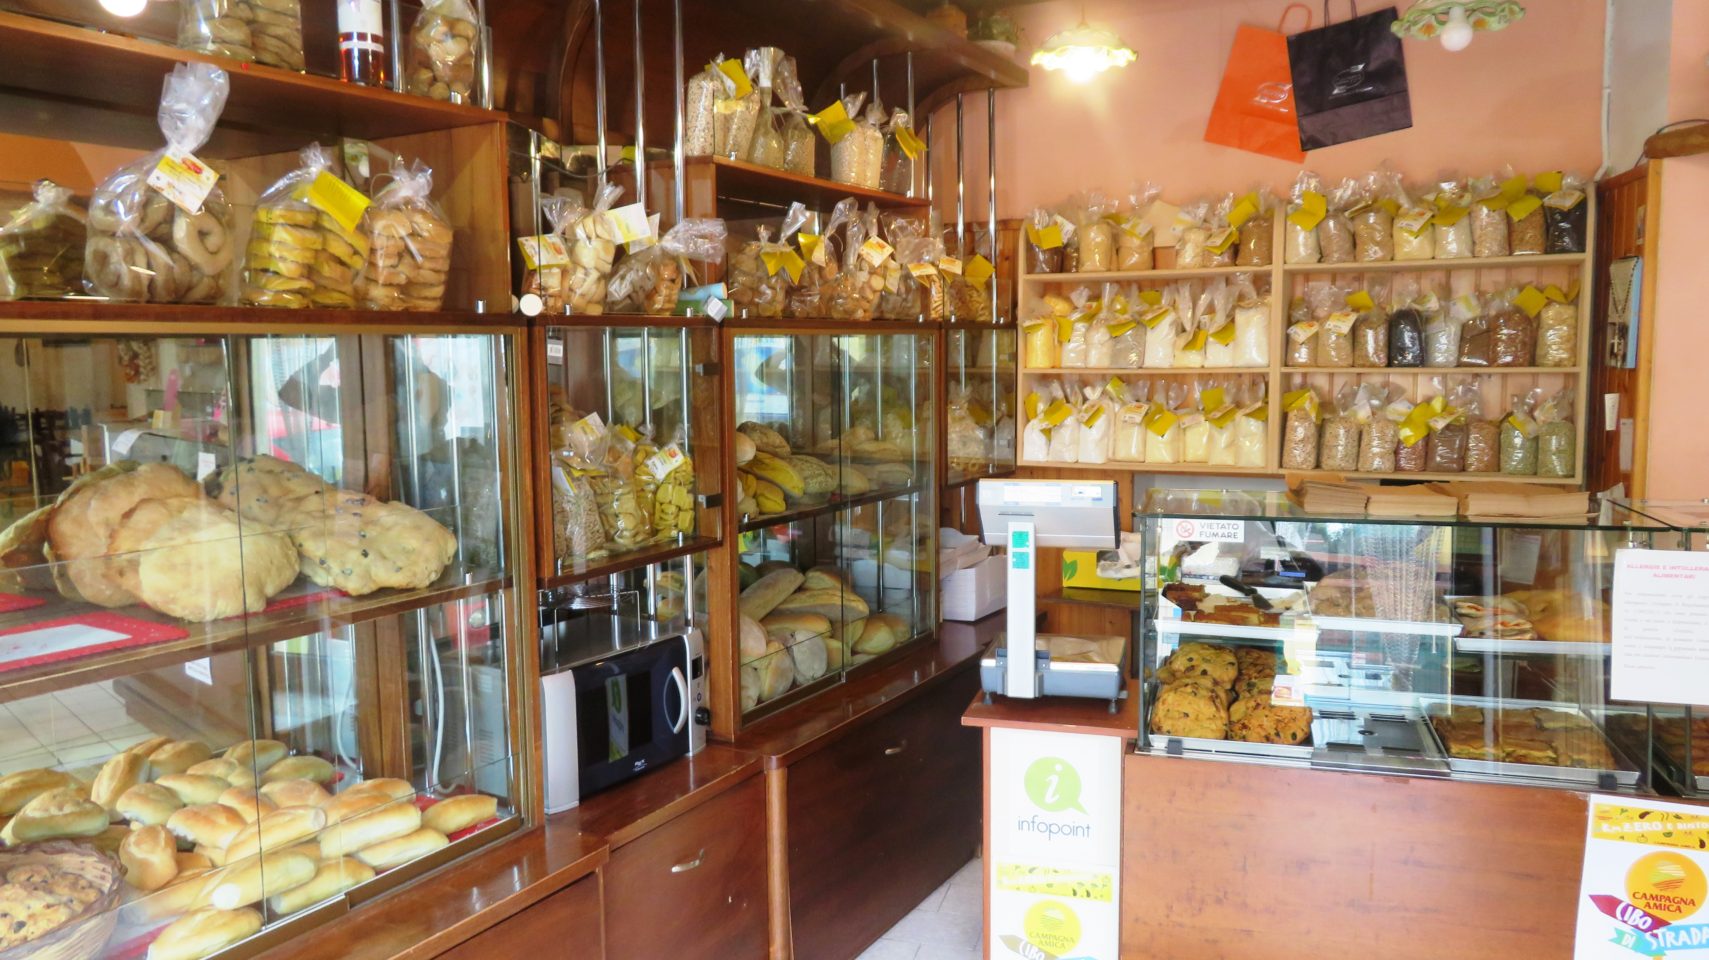 Farmer/Miller/Baker Panificio Caroppo in Minervino di Lecce ! The Wholesome Charms of Salento in Italy